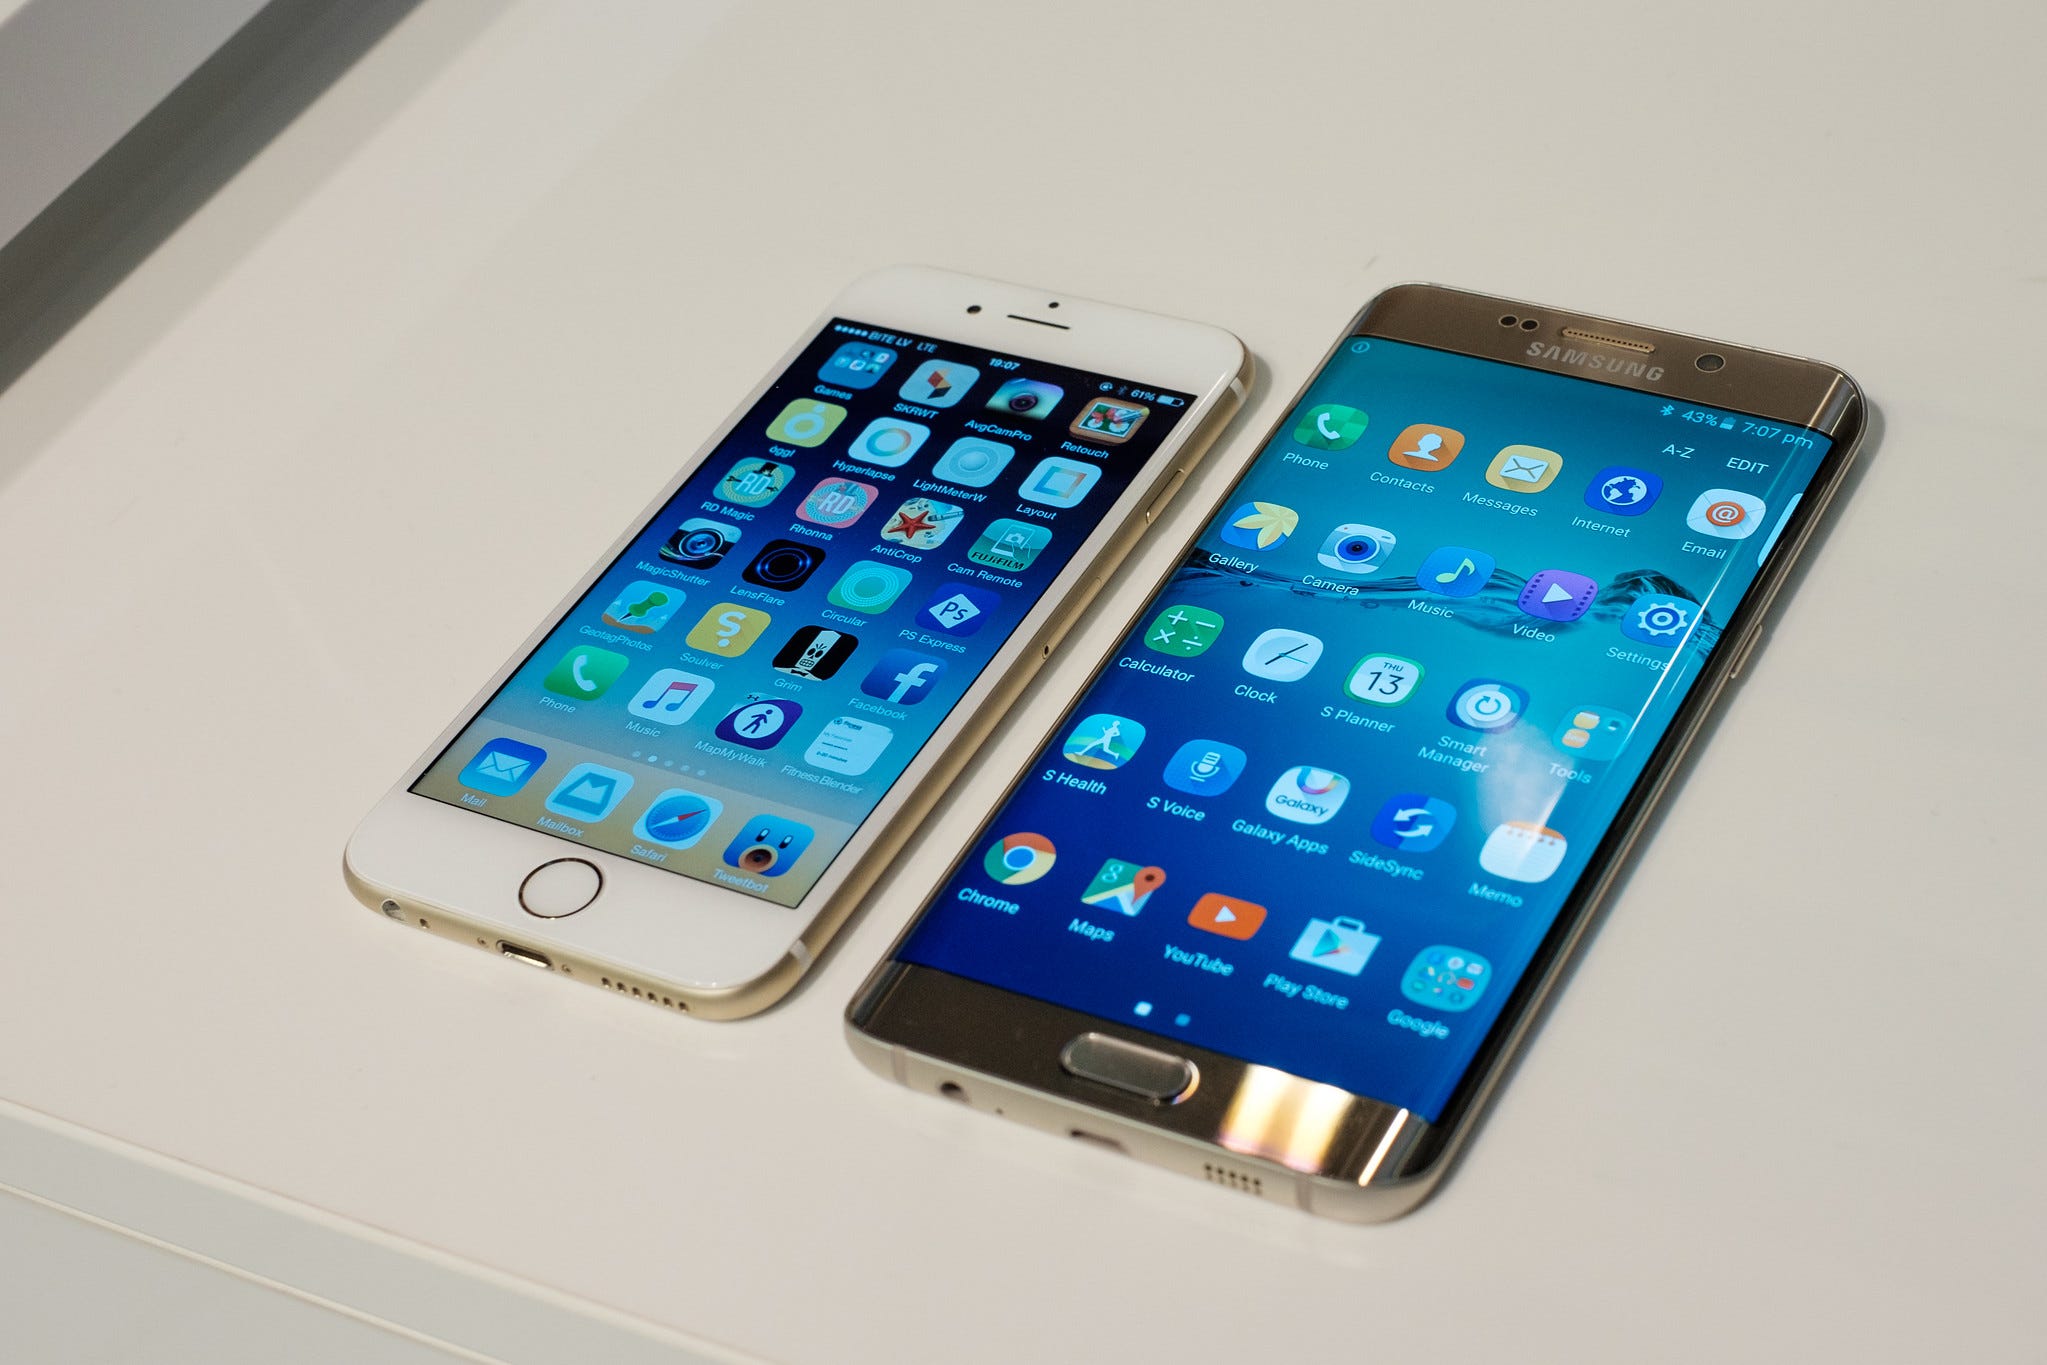 An iPhone 6 next to a Samsung Galaxy S6 Edge Plus